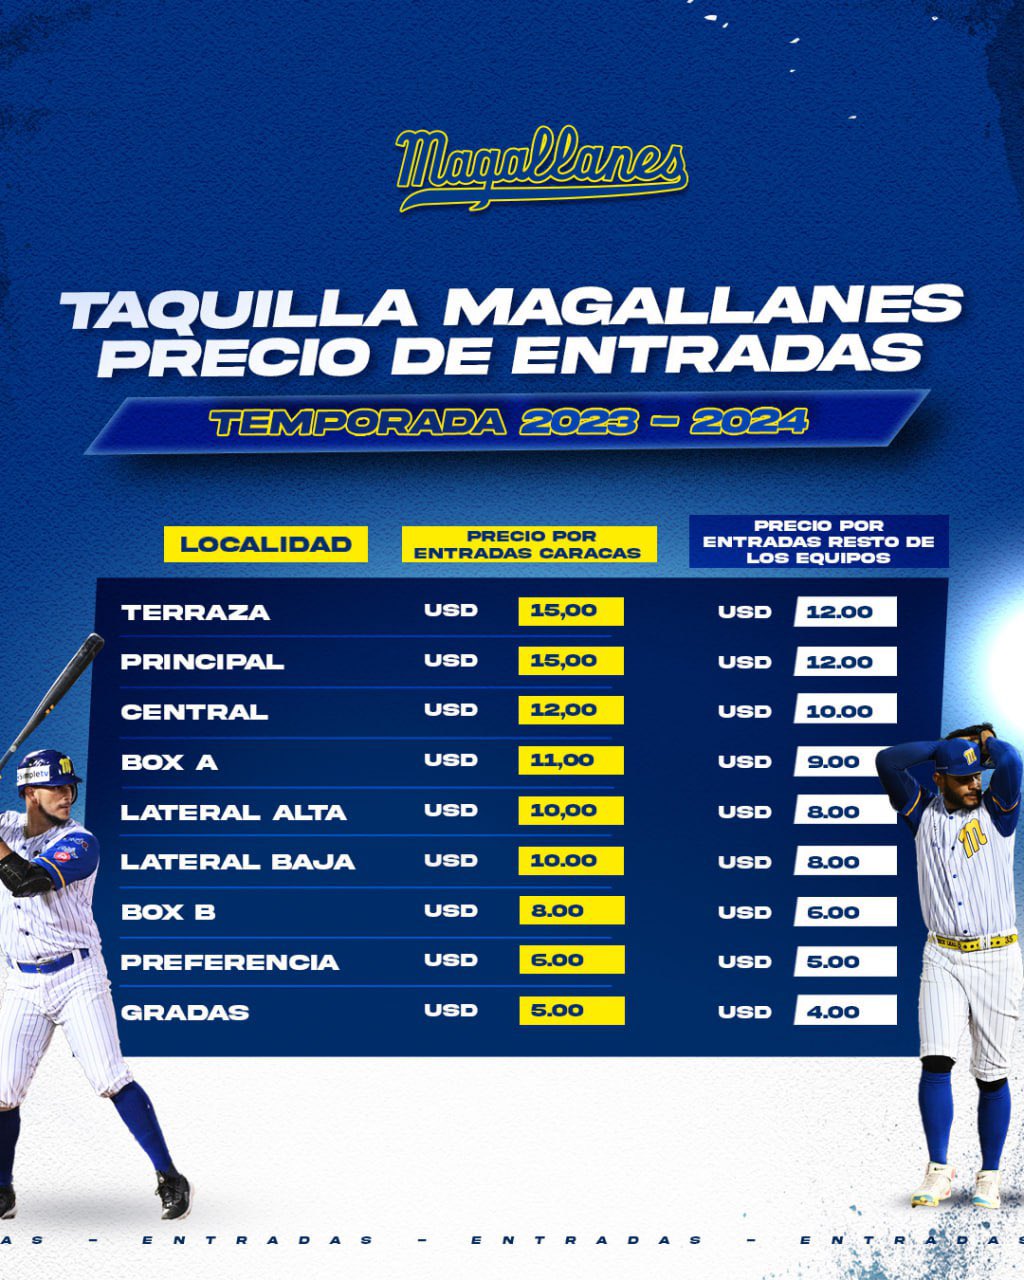 Precios de entradas de Navegantes del Magallanes - noticiacn